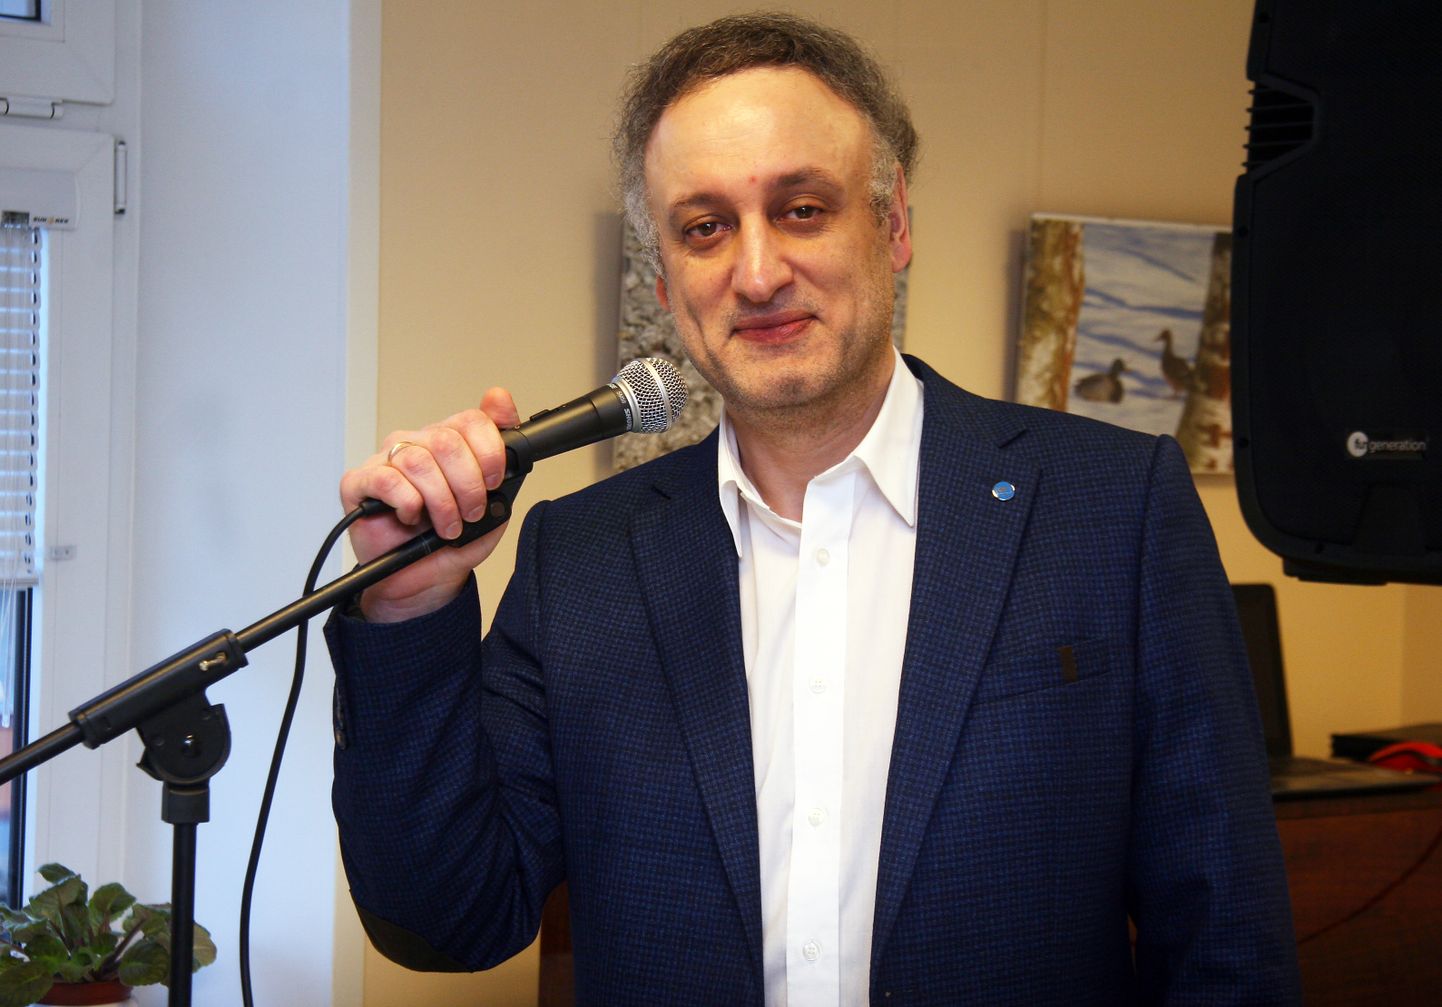 Laulja ja laulukirjutaja, kirjanik ja luuletaja − Ilja Masljakov jagab oma loomingut meeleldi publikuga. Pildil esineb ta Kohtla-Järve raamatukogus.